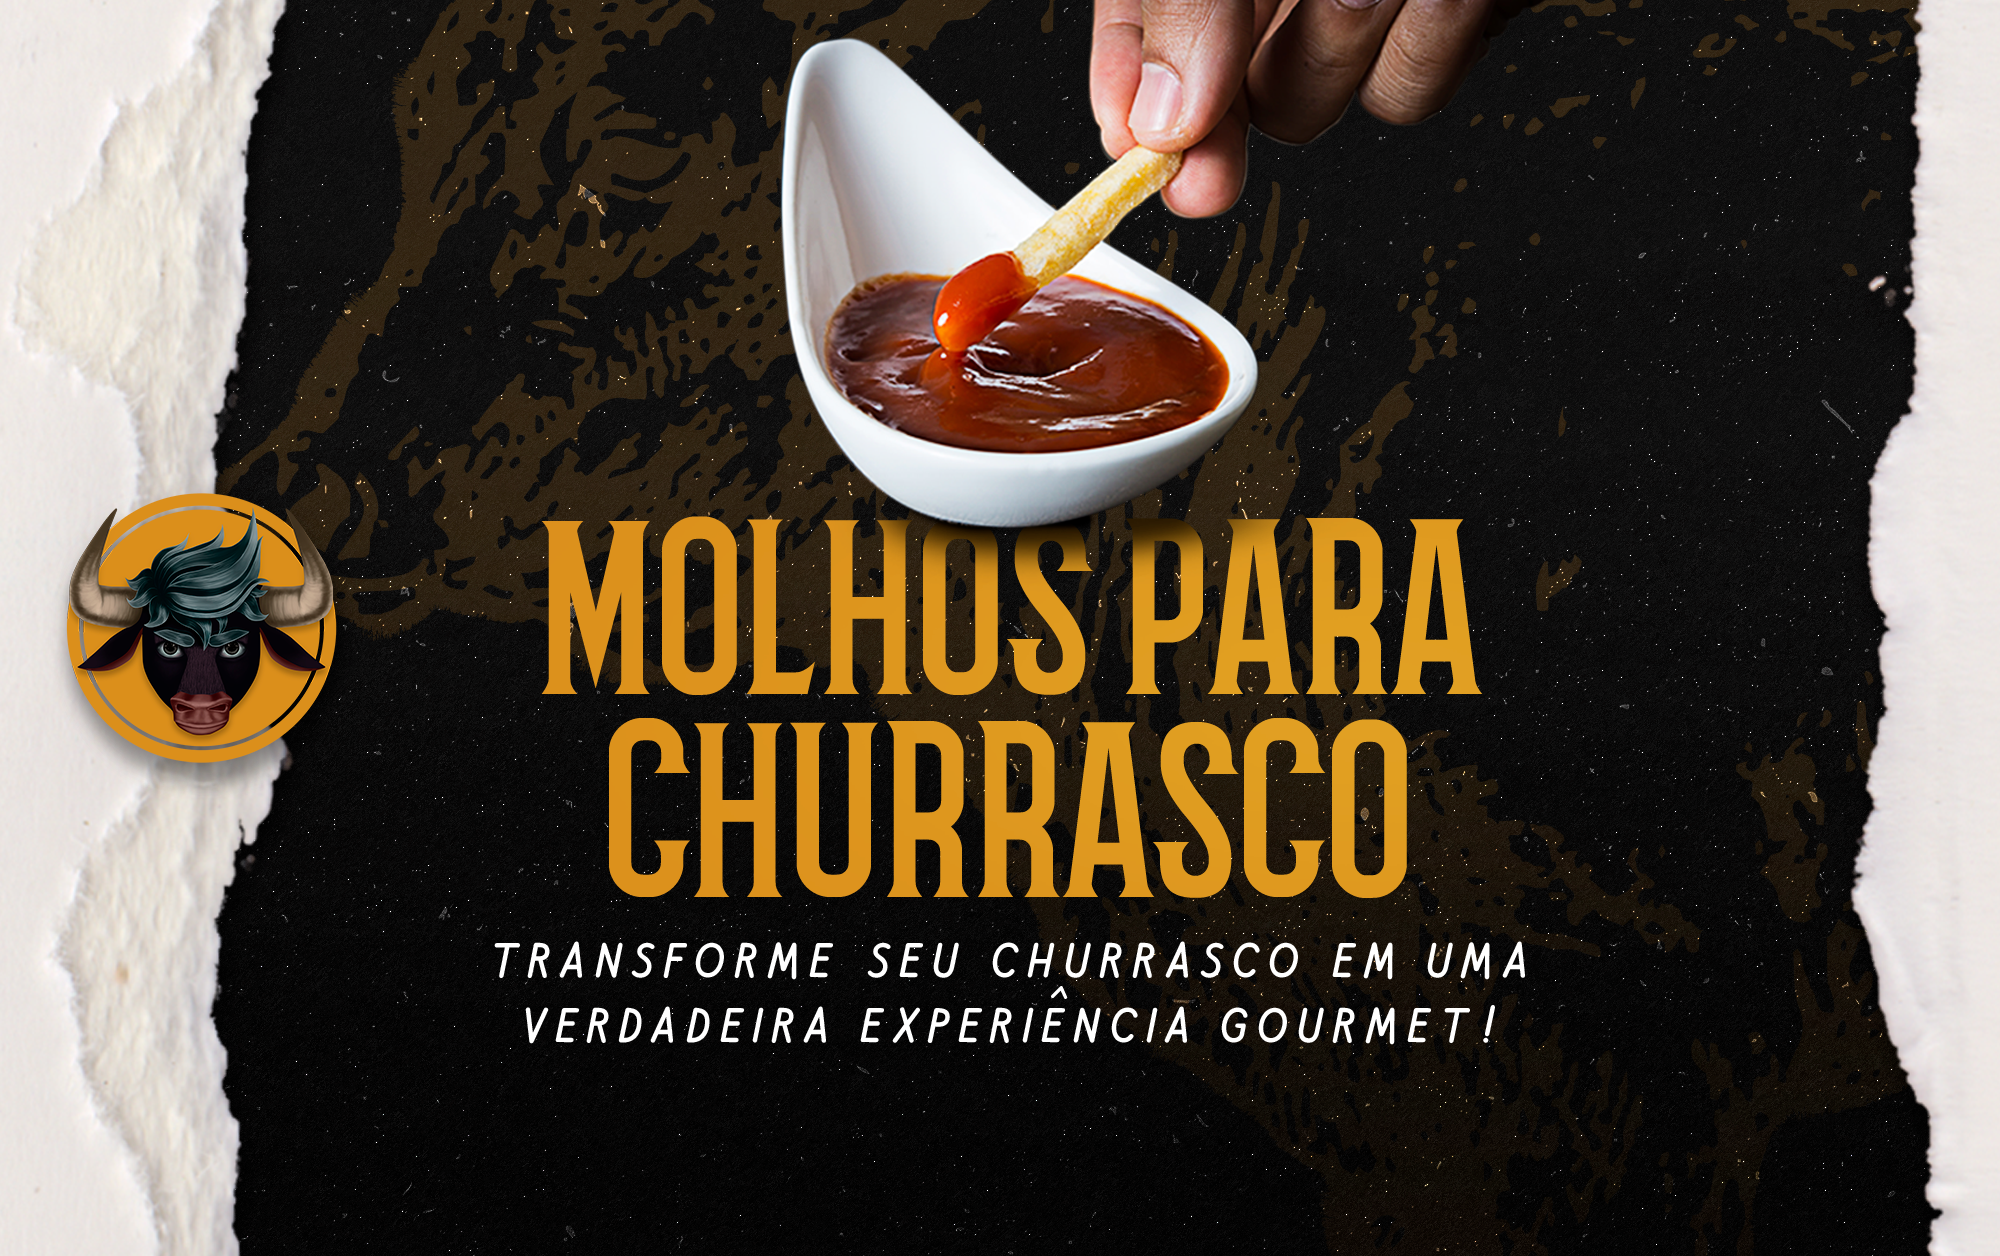 Molhos para Churrasco: transforme seu churrasco em uma verdadeira experiência gourmet